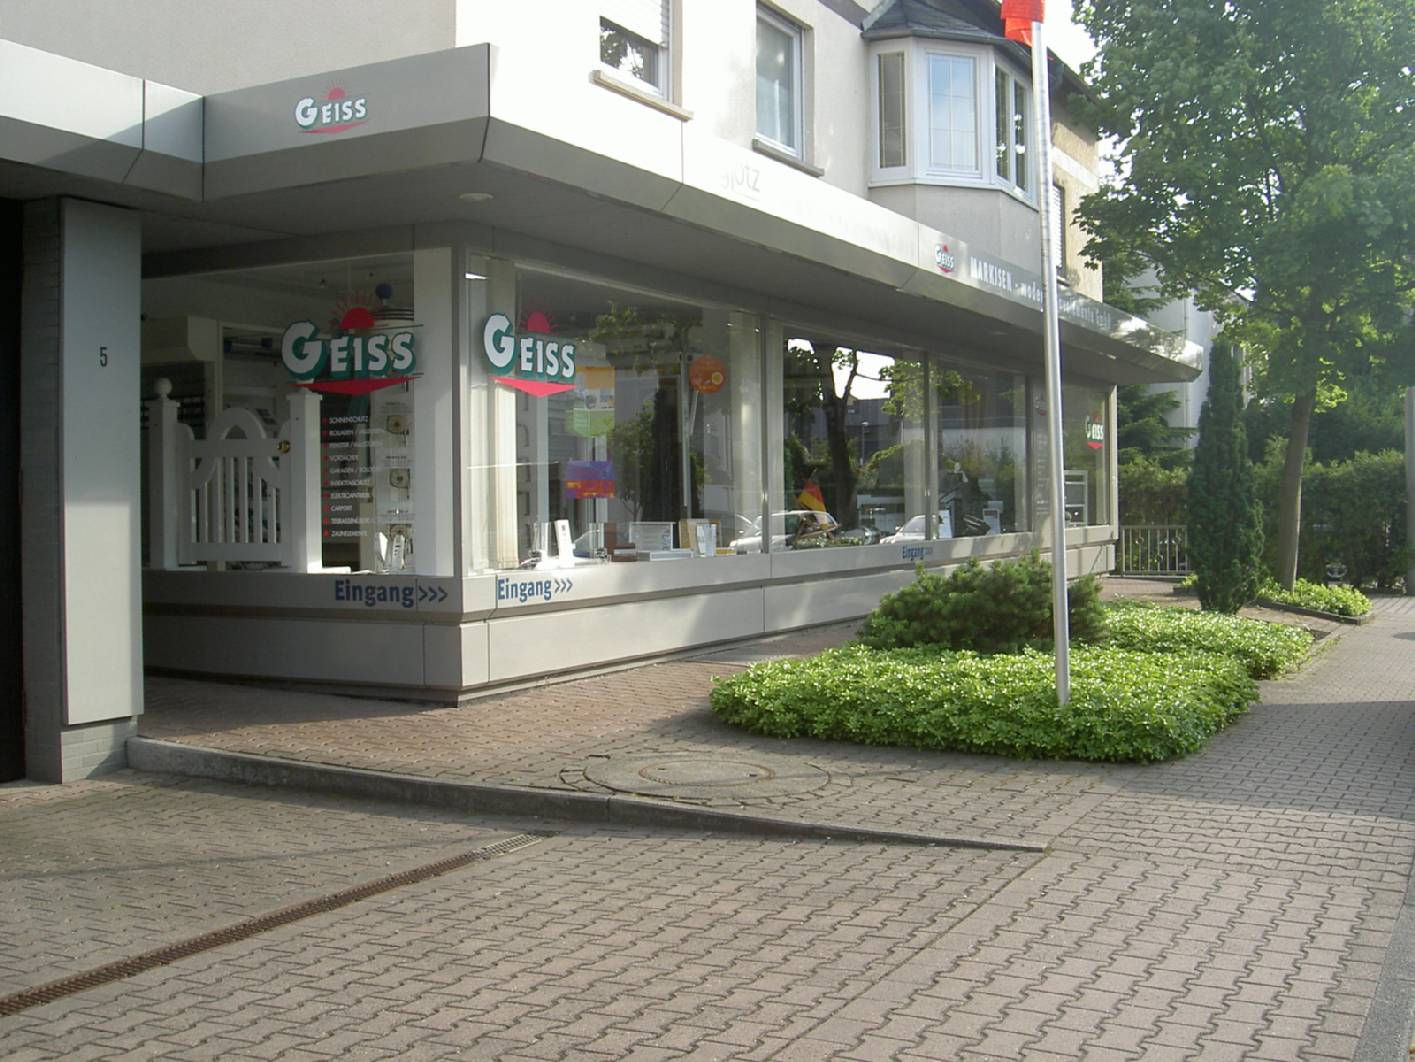 Geiss Markisen moderne Bauelemente GmbH ist Ihr Experte rund um Rollladen- und Sonnenschutz